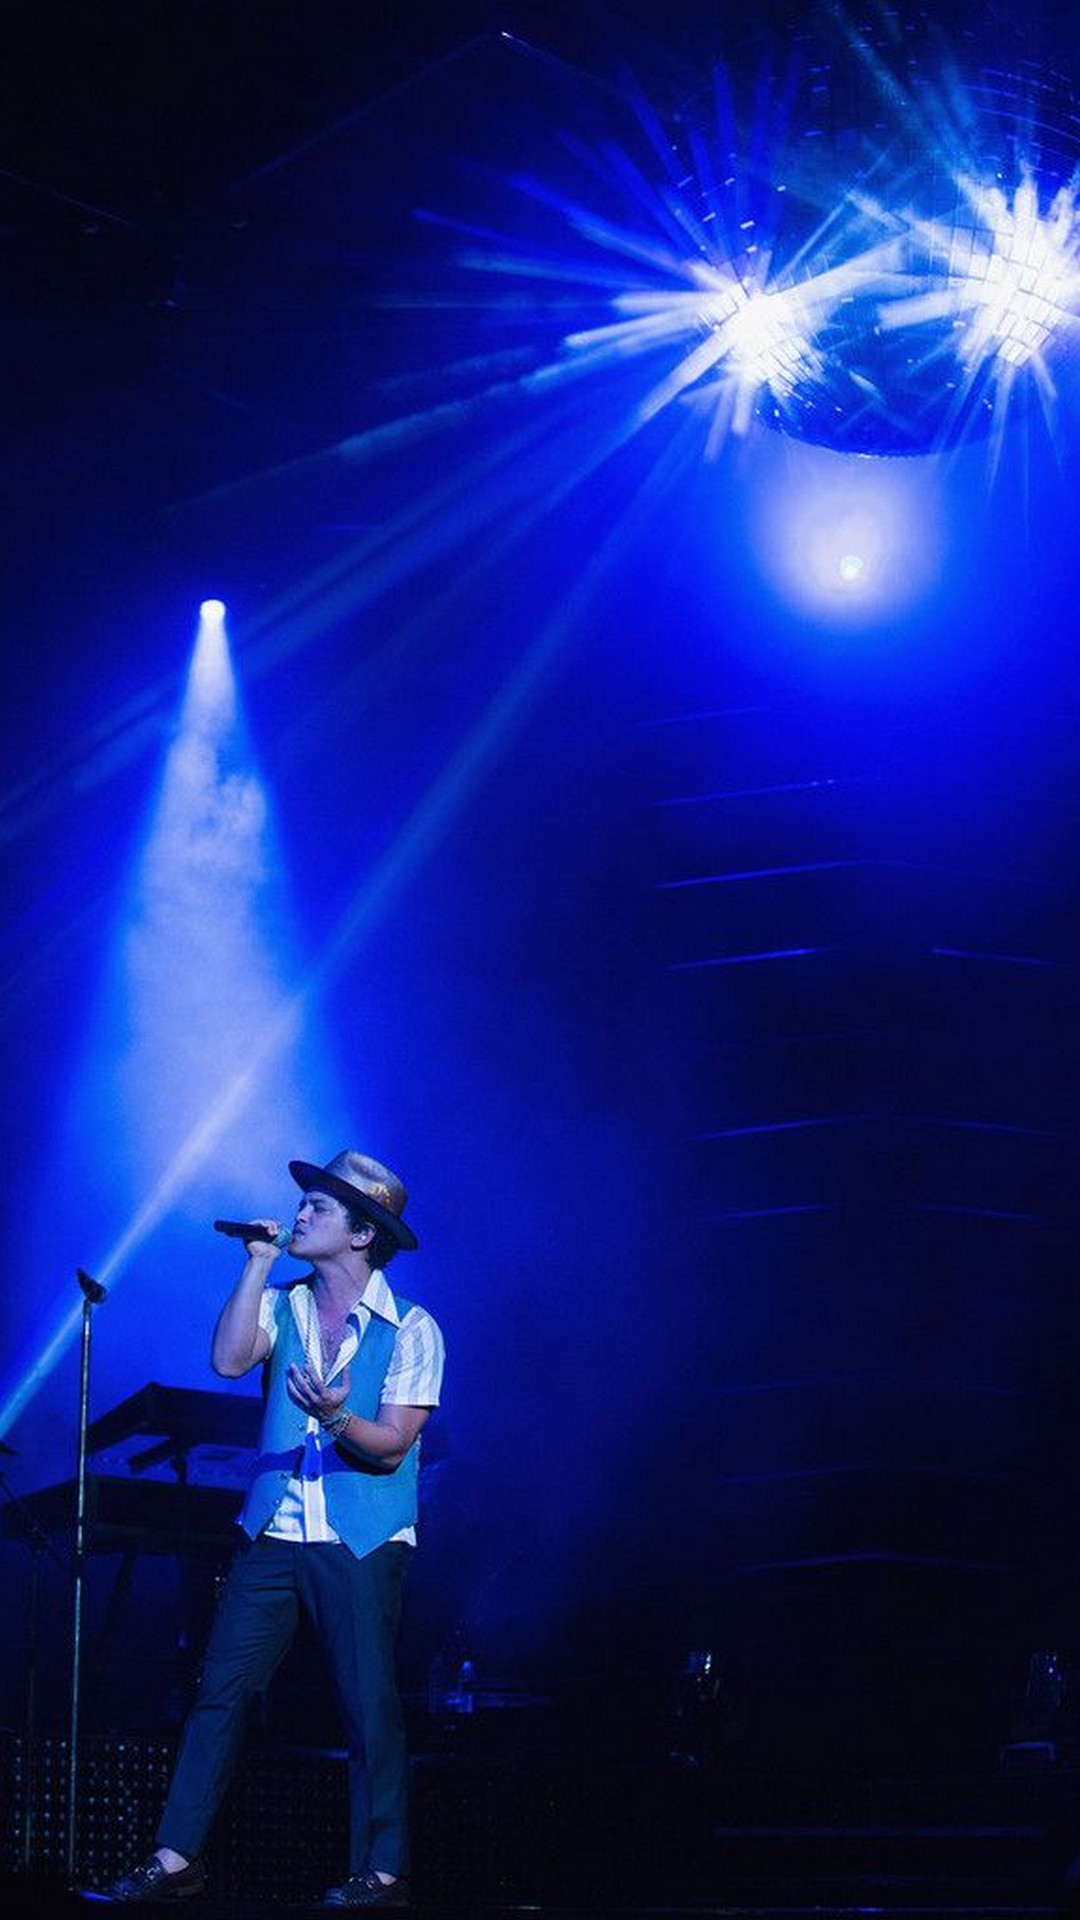 Bruno Mars Hat Concert iPhone Wallpaper resolution 1080x1920